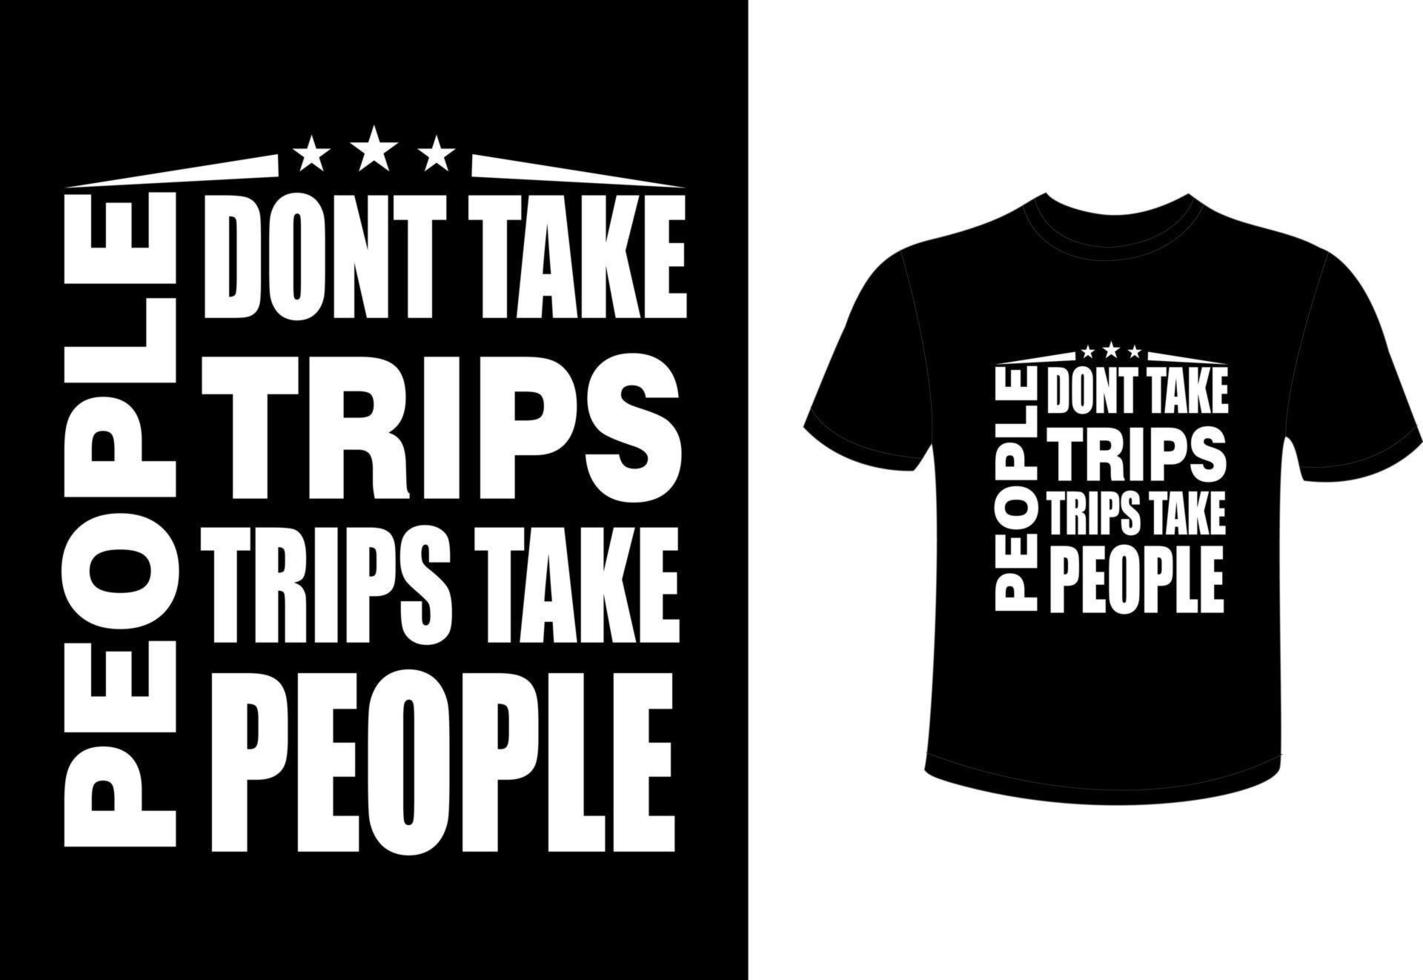 diseño de camiseta de viaje turístico, diseño de camiseta de viaje de aventura vector